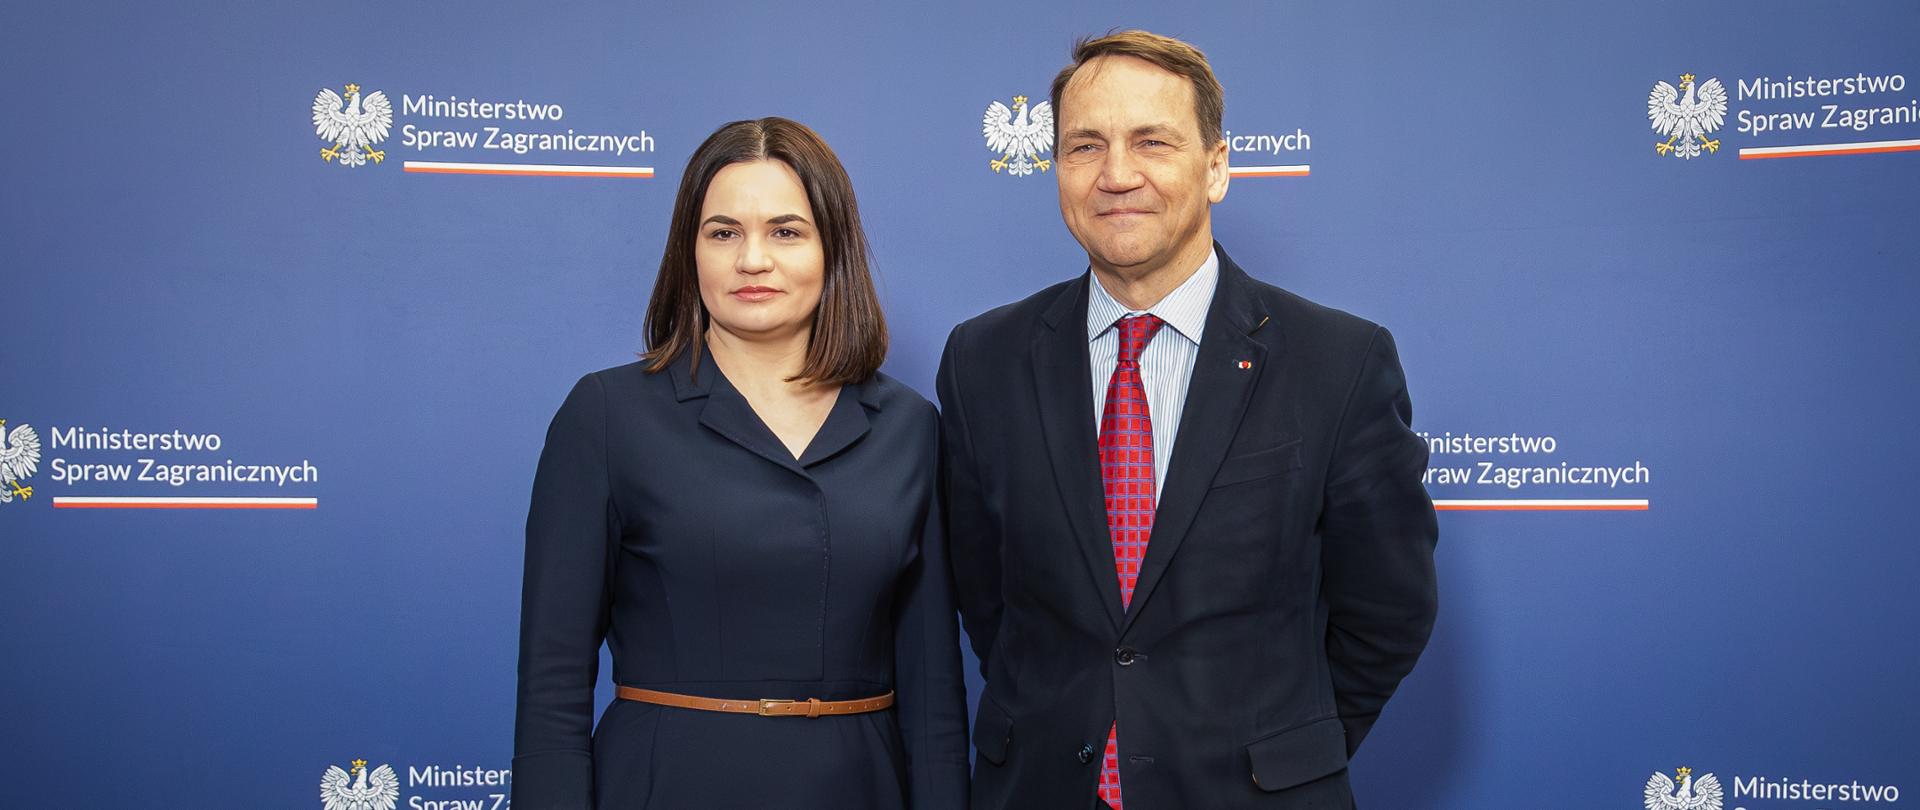 Spotkanie Ministra Radosława Sikorskiego z liderką białoruskiej opozycji demokratycznej Swiatłaną Cichanouską